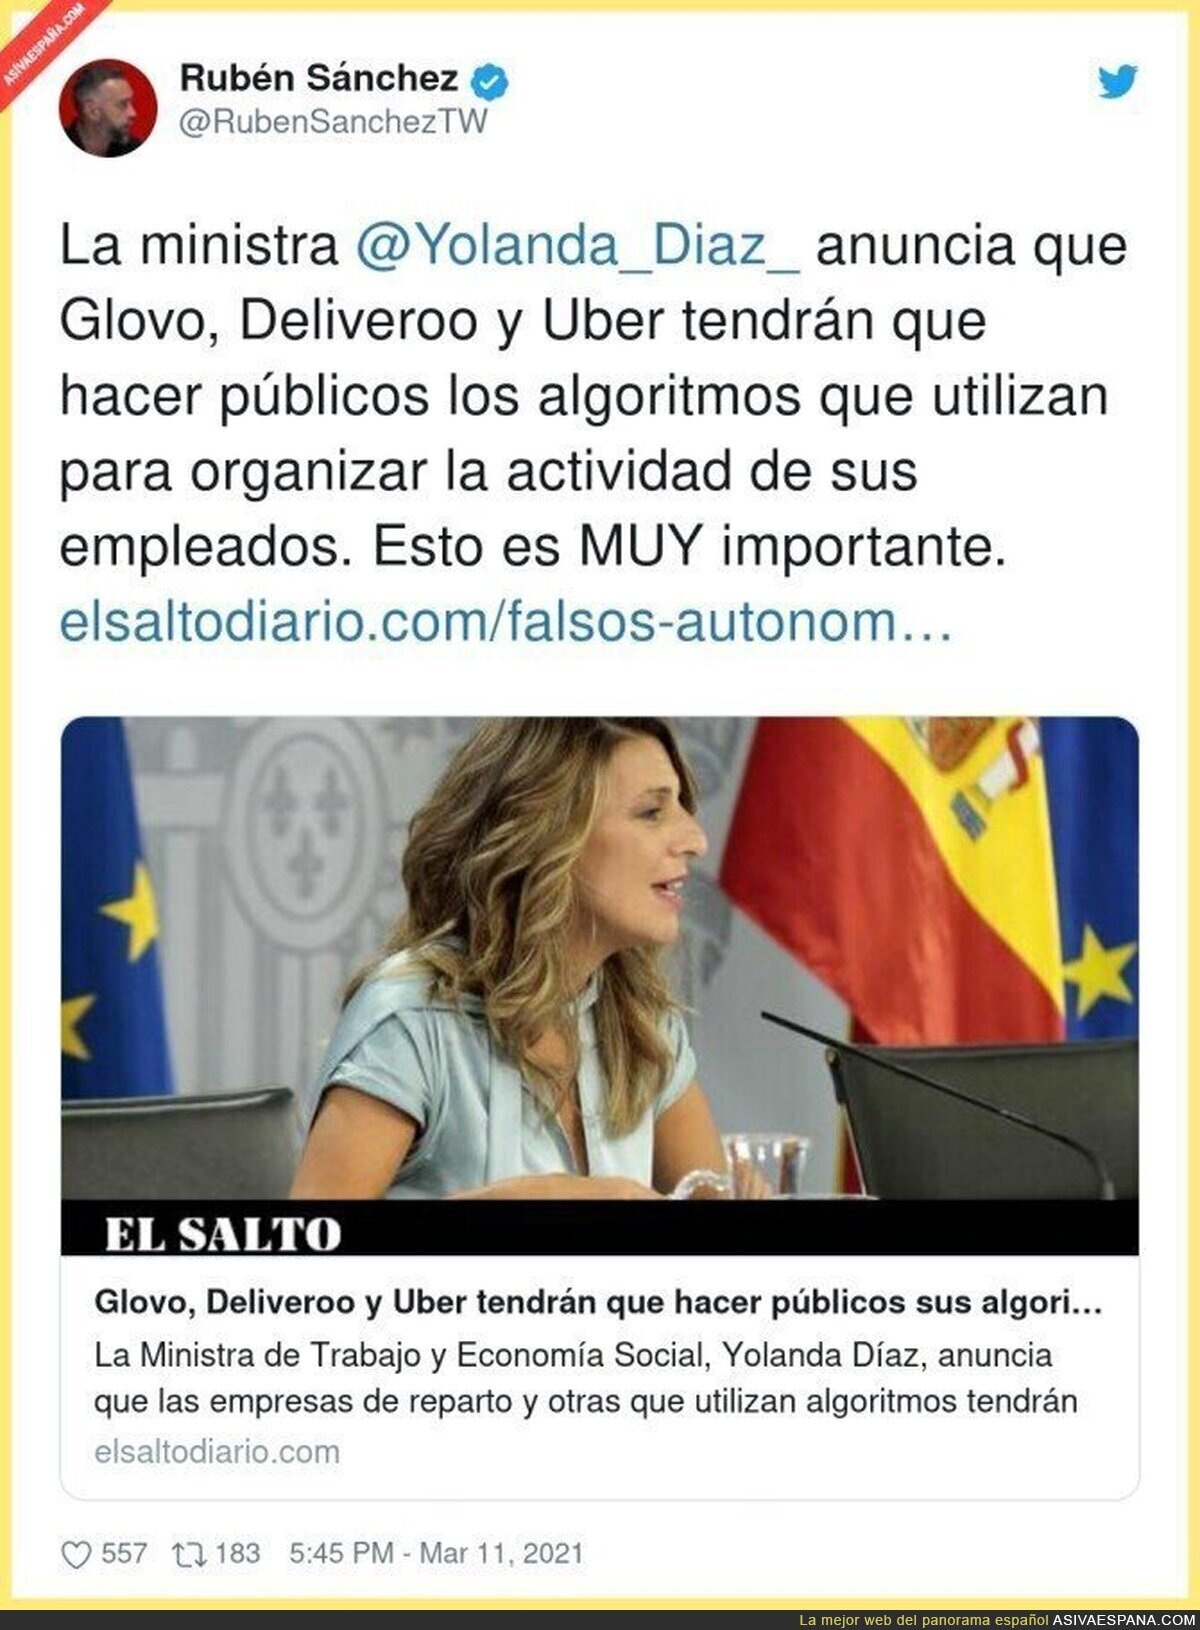 La Ministra Yolanda Díaz empieza a trabajar seriamente